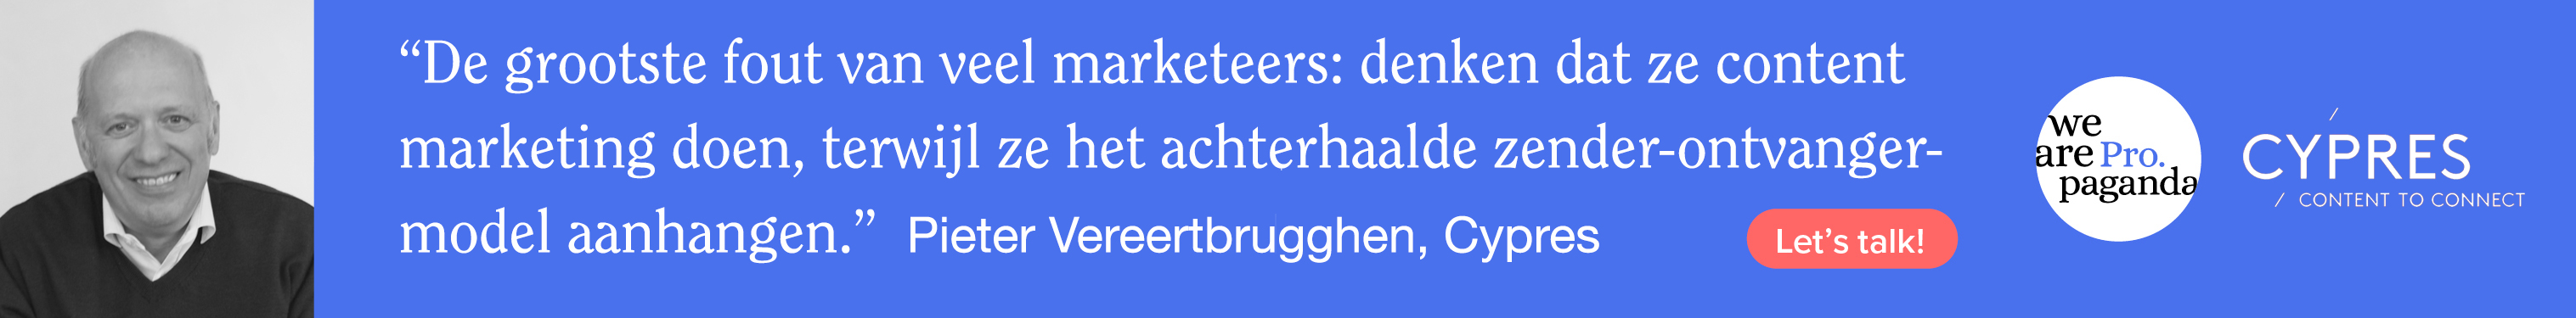 Pieter Vereertbrugghen over de toekomst van content marketing: “Bedrijven moeten beseffen dat content één van hun belangrijkste business activa is”